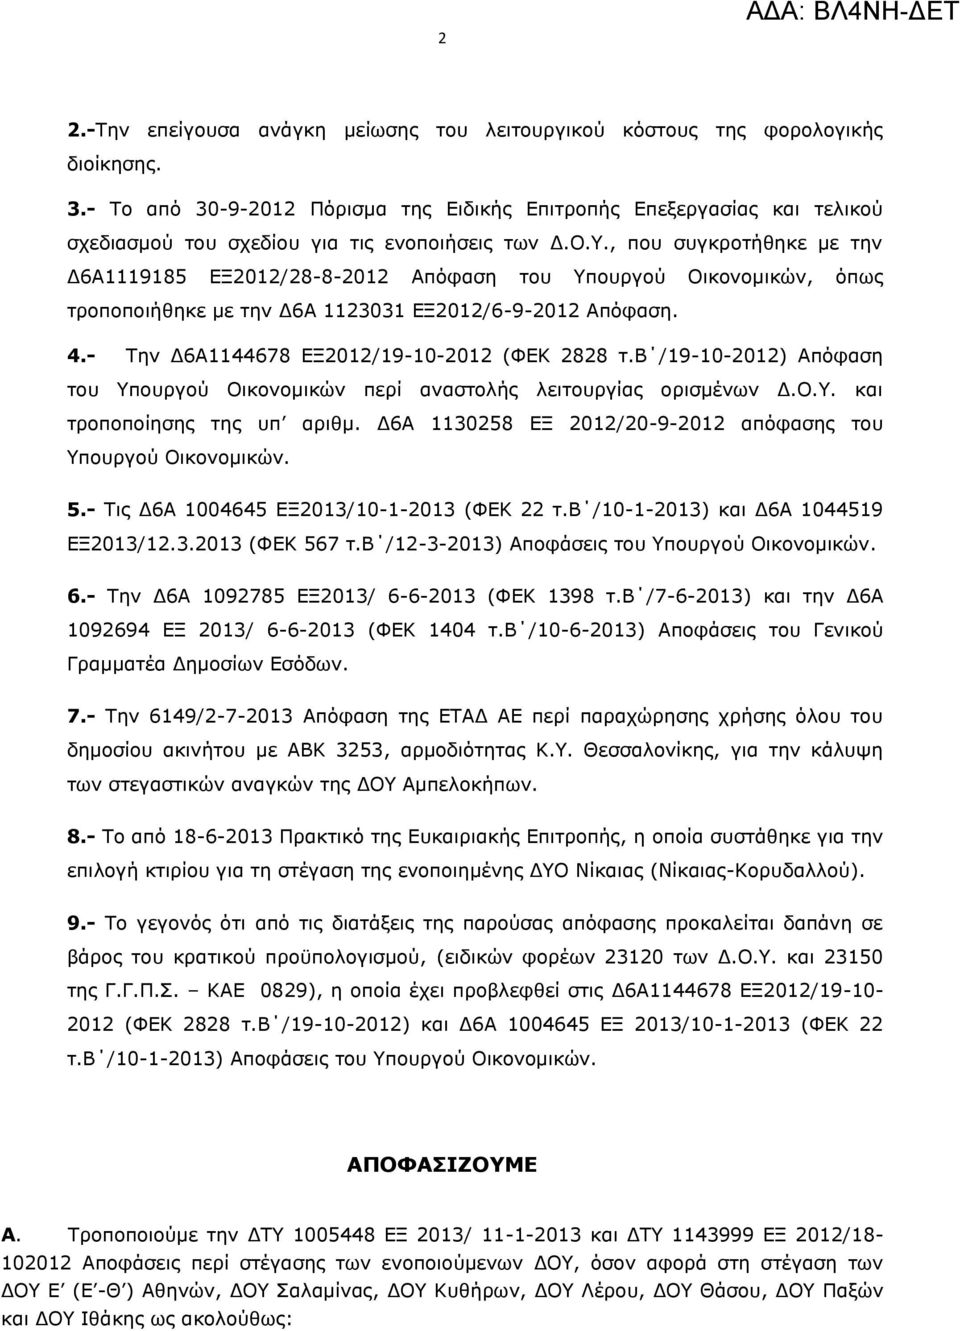 , που συγκροτήθηκε με την Δ6Α1119185 ΕΞ2012/28-8-2012 Απόφαση του Υπουργού Οικονομικών, όπως τροποποιήθηκε με την Δ6Α 1123031 ΕΞ2012/6-9-2012 Απόφαση. 4.- Την Δ6Α1144678 ΕΞ2012/19-10-2012 (ΦΕΚ 2828 τ.